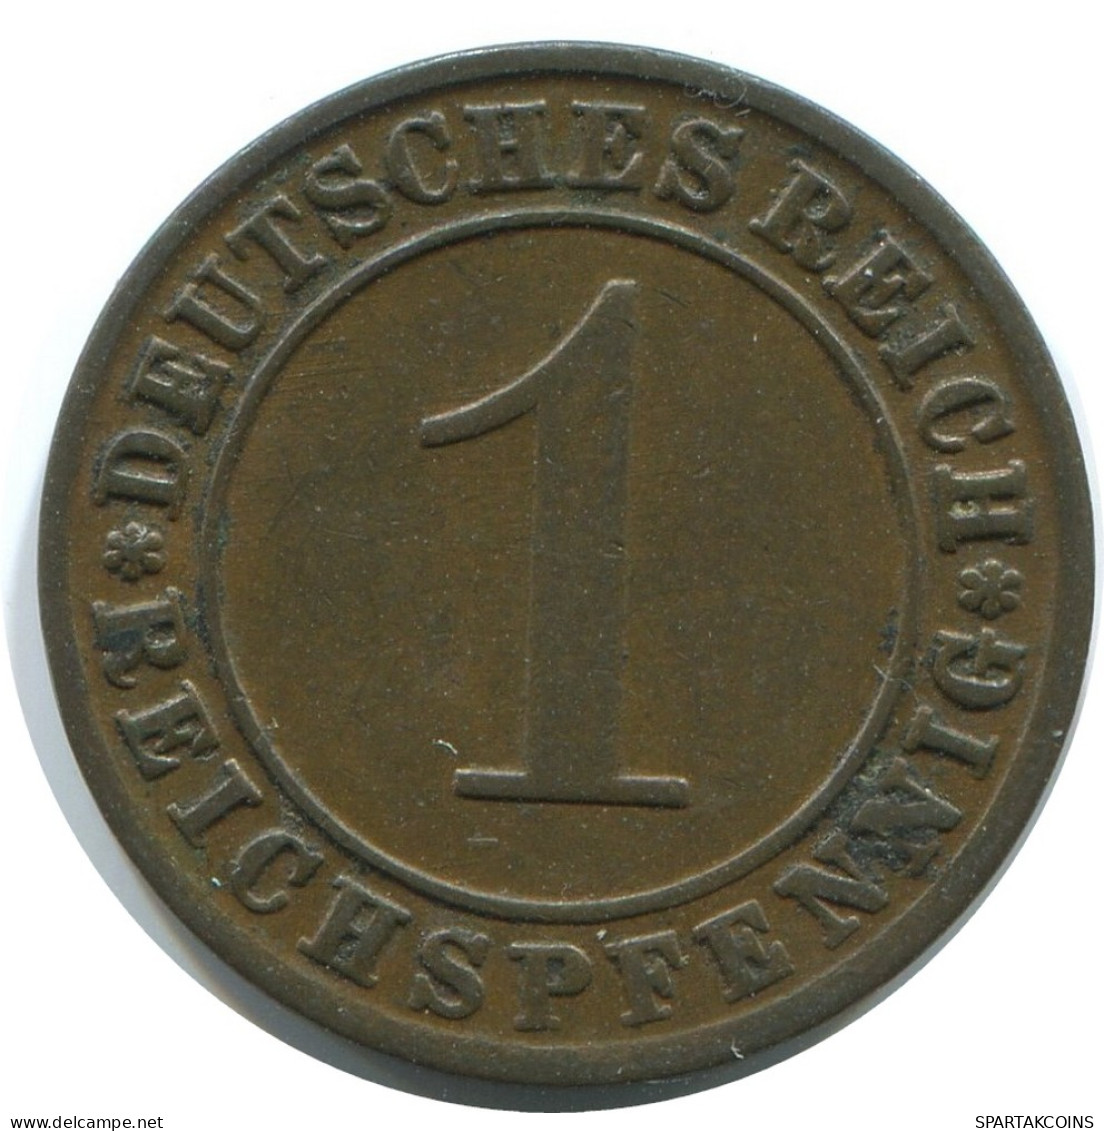 1 REICHSPFENNIG 1925 G GERMANY Coin #AE232.U - 1 Renten- & 1 Reichspfennig